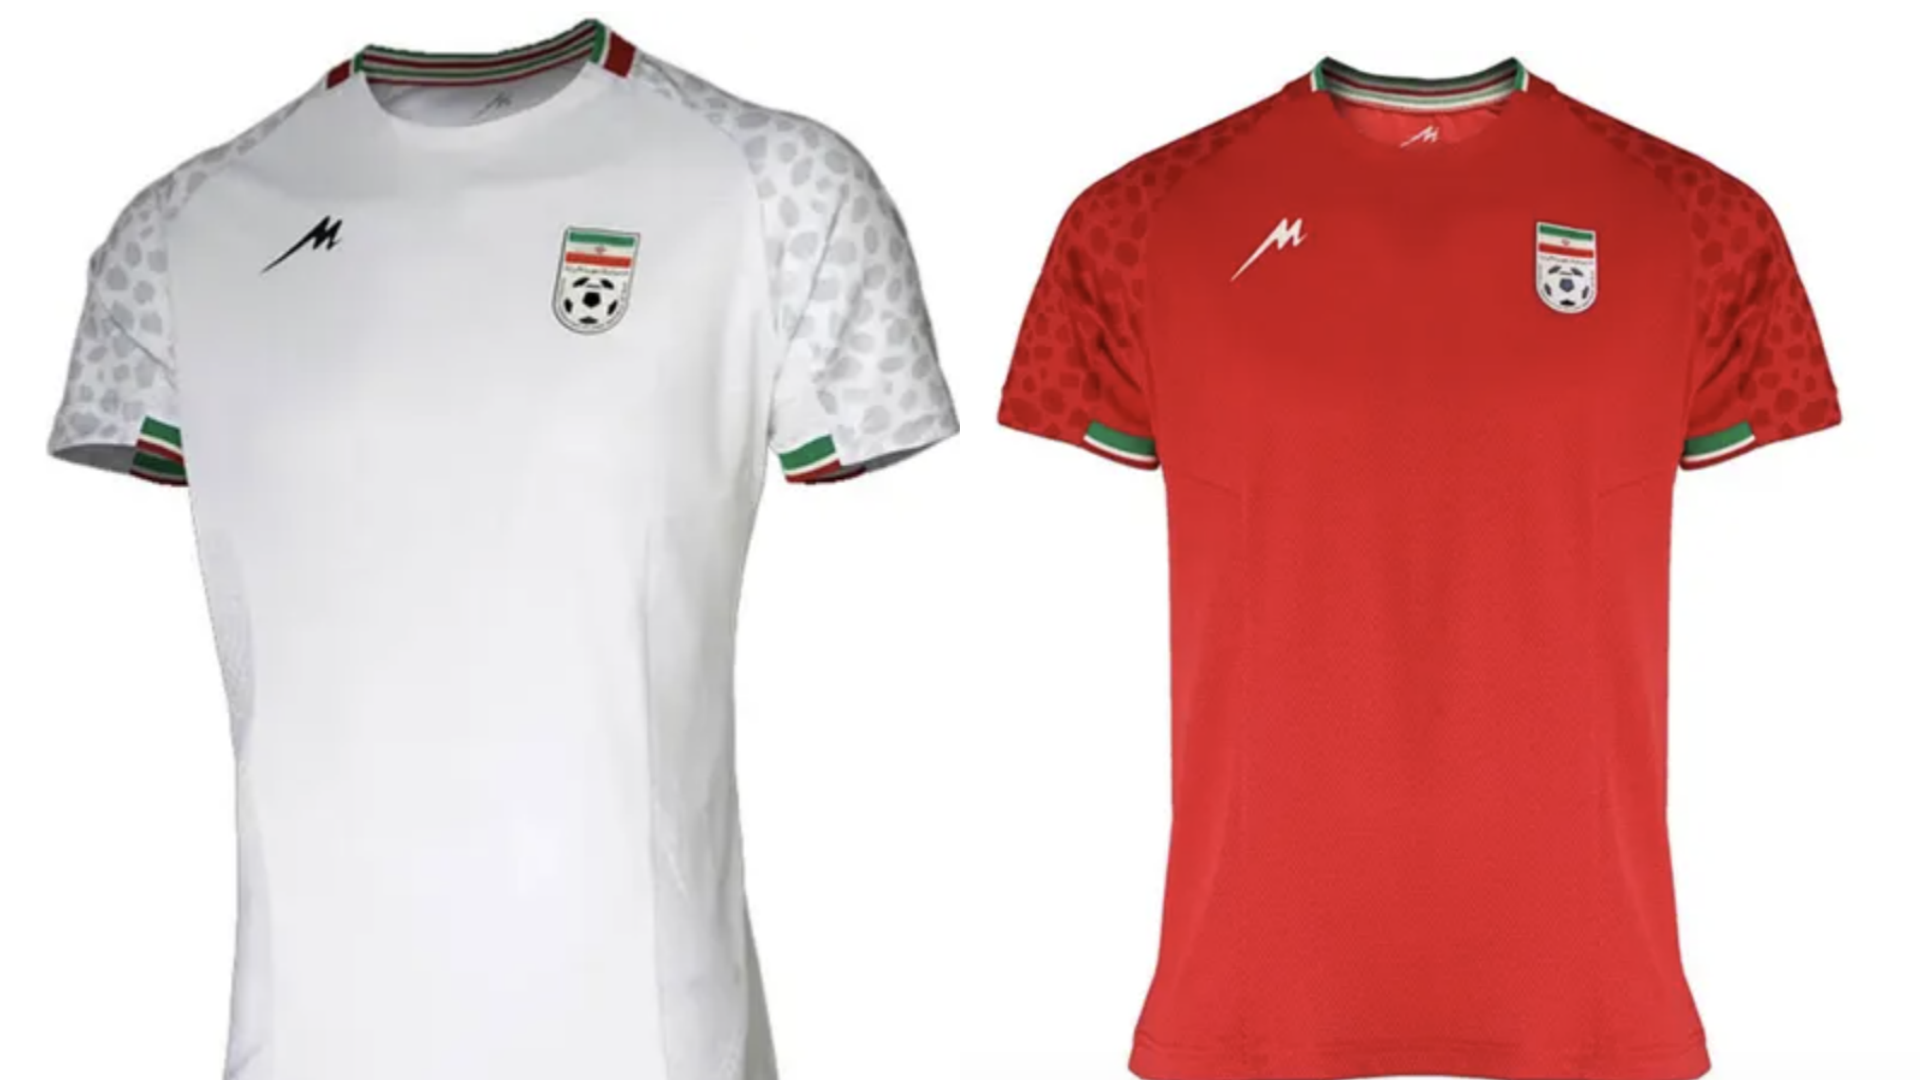 Qué Irán en su camiseta: qué es Majid, de que país es, a qué equipos viste y todo lo que necesitas saber | Goal.com Espana